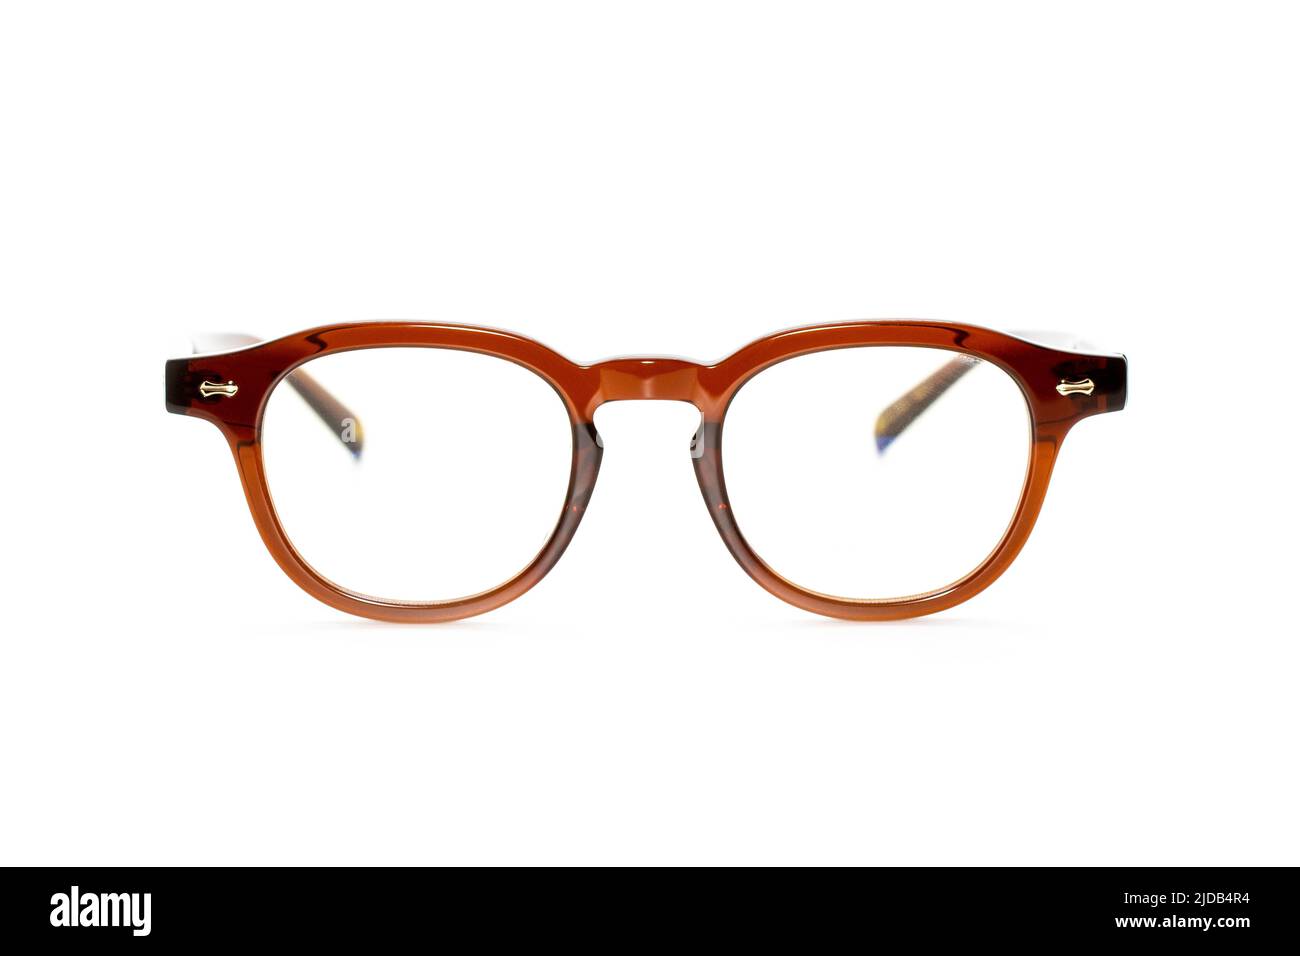 Image de lunettes modernes et tendance isolées sur fond blanc, lunettes, lunettes. Banque D'Images